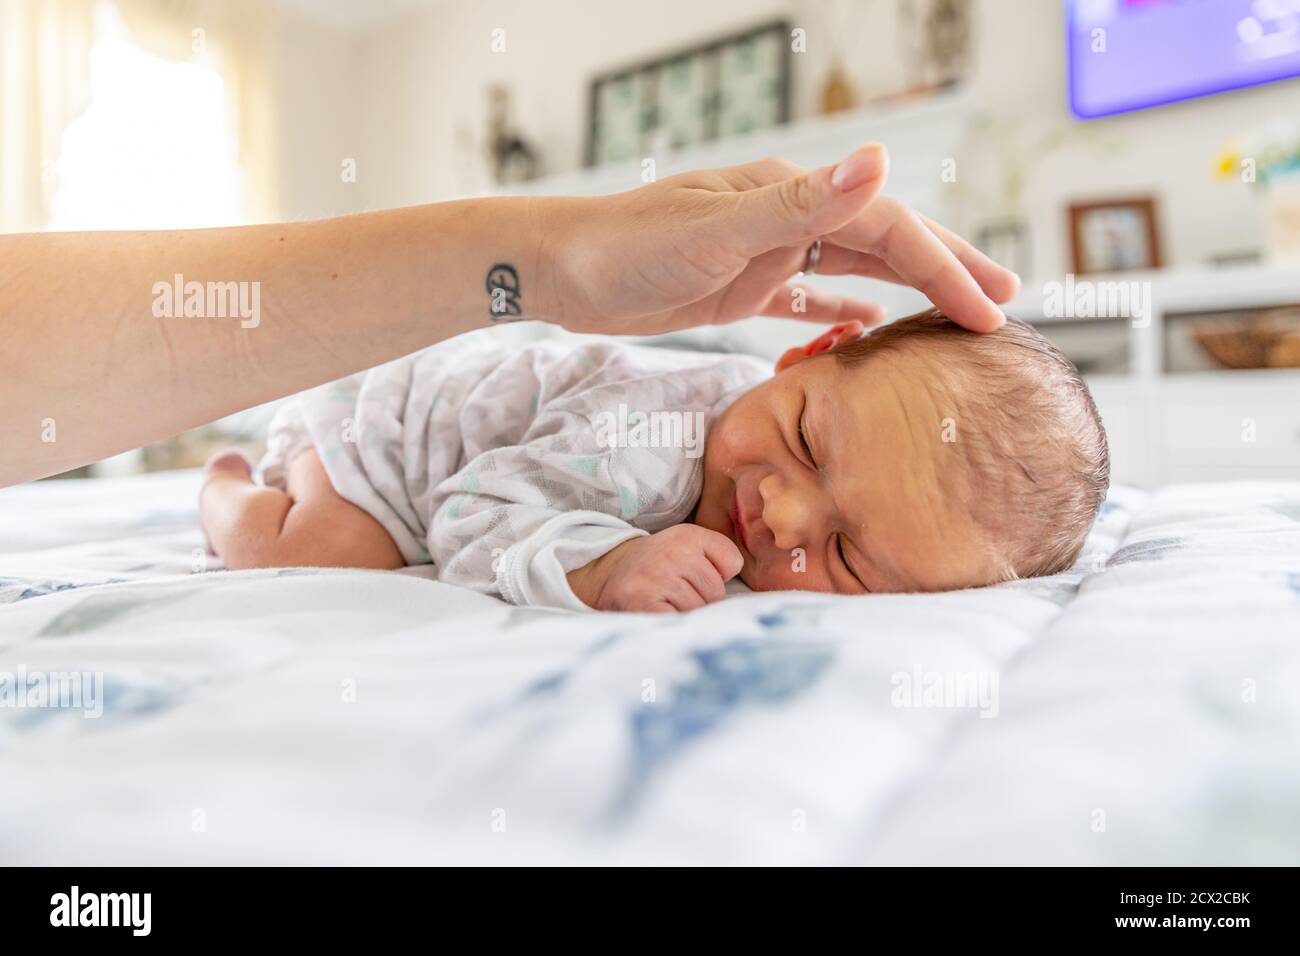 Sorridi bambino neonato che posa sullo stomaco mentre la madre tocca delicatamente la testa. Foto Stock